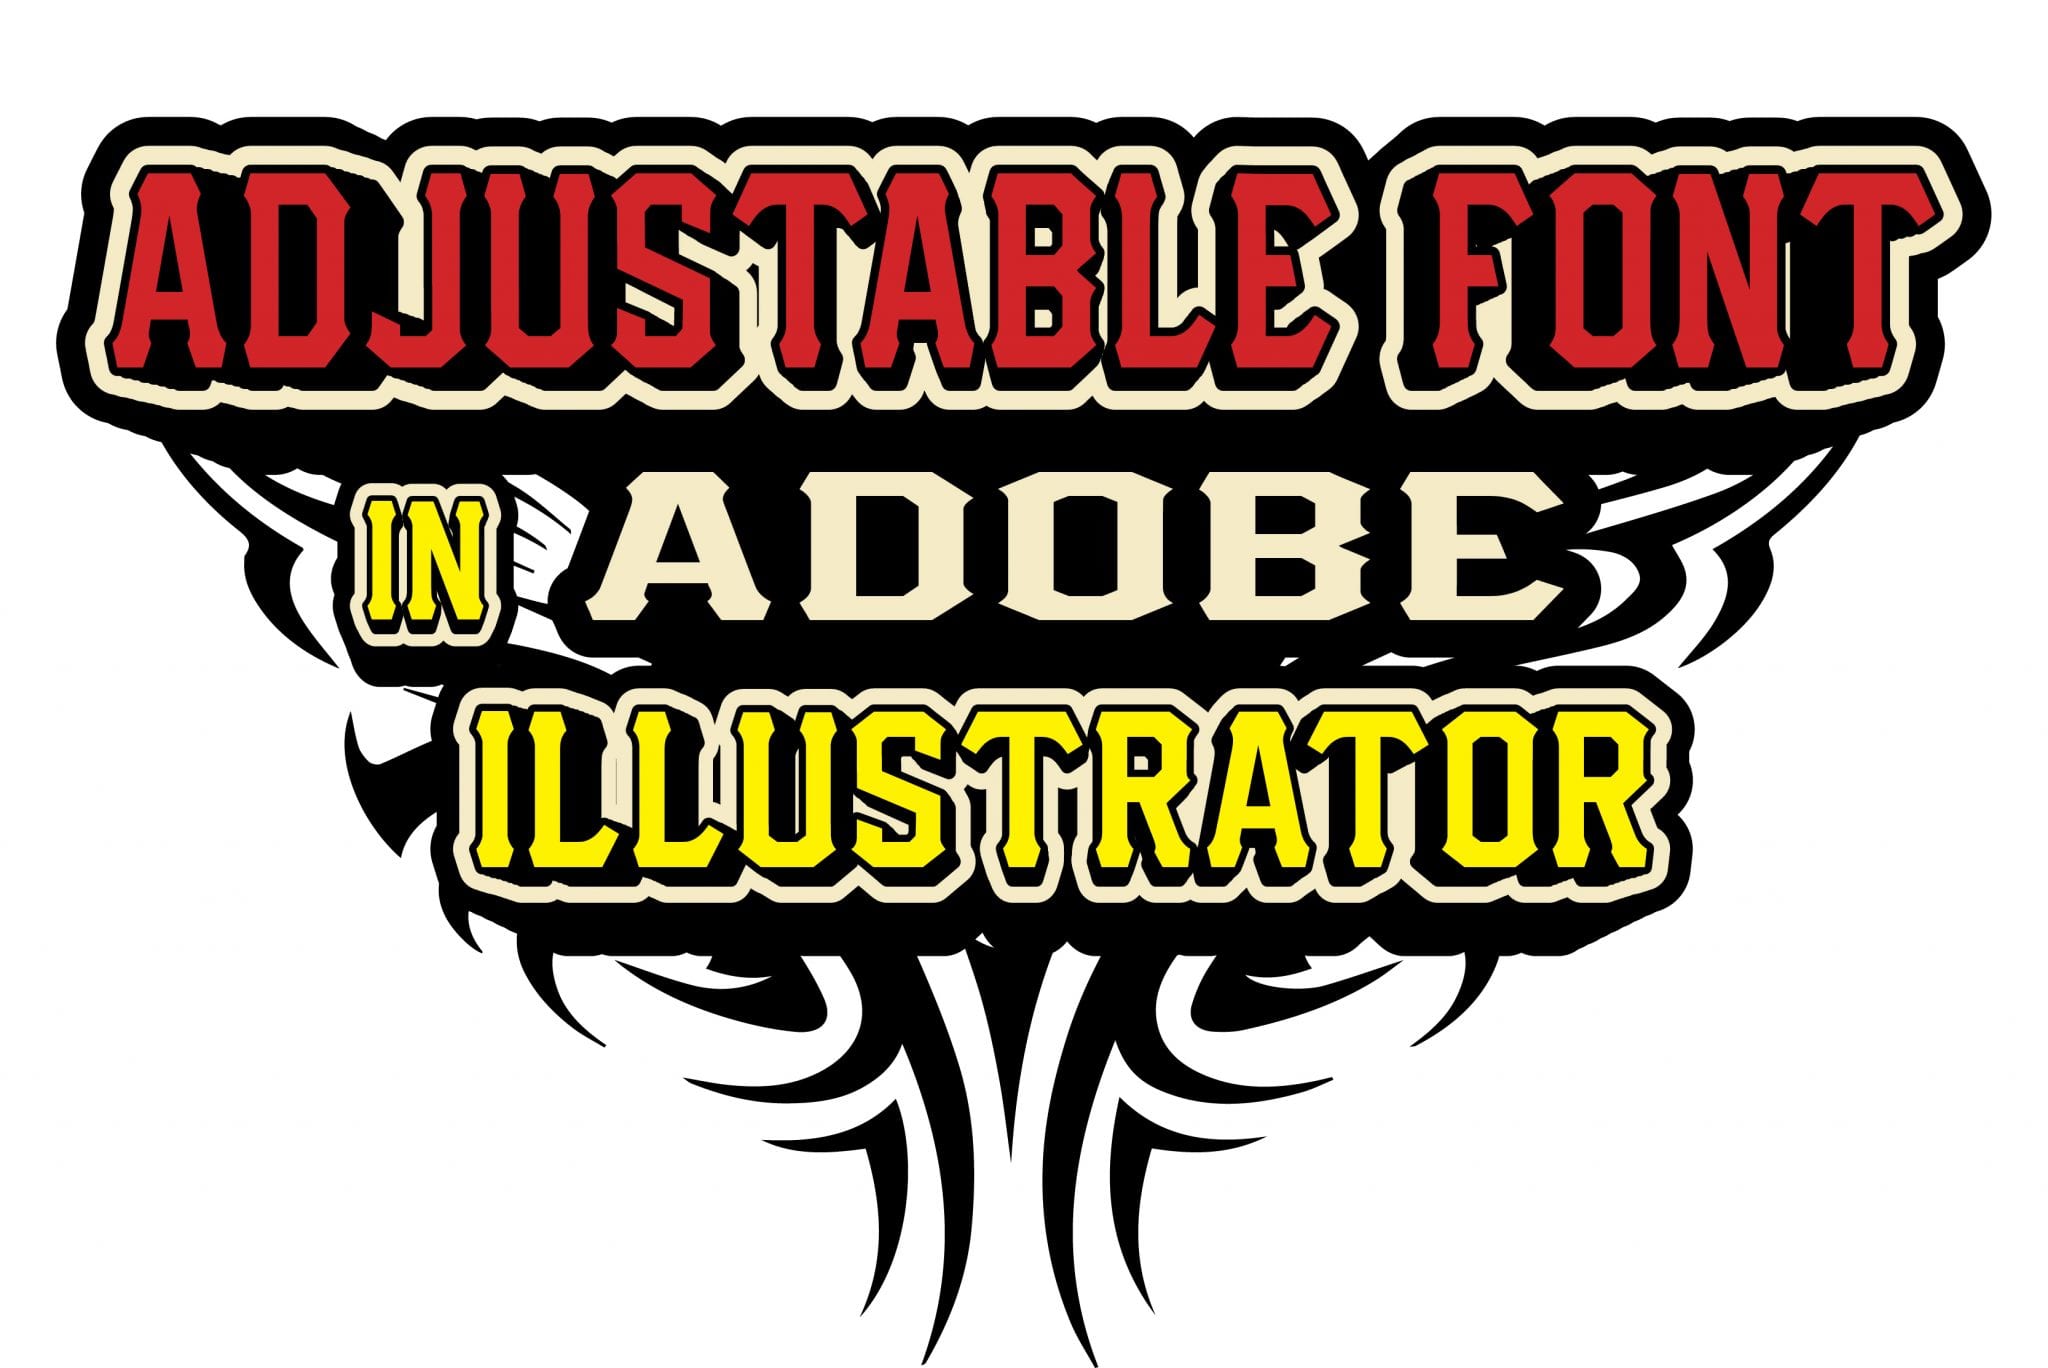 font for adobe illustrator free download